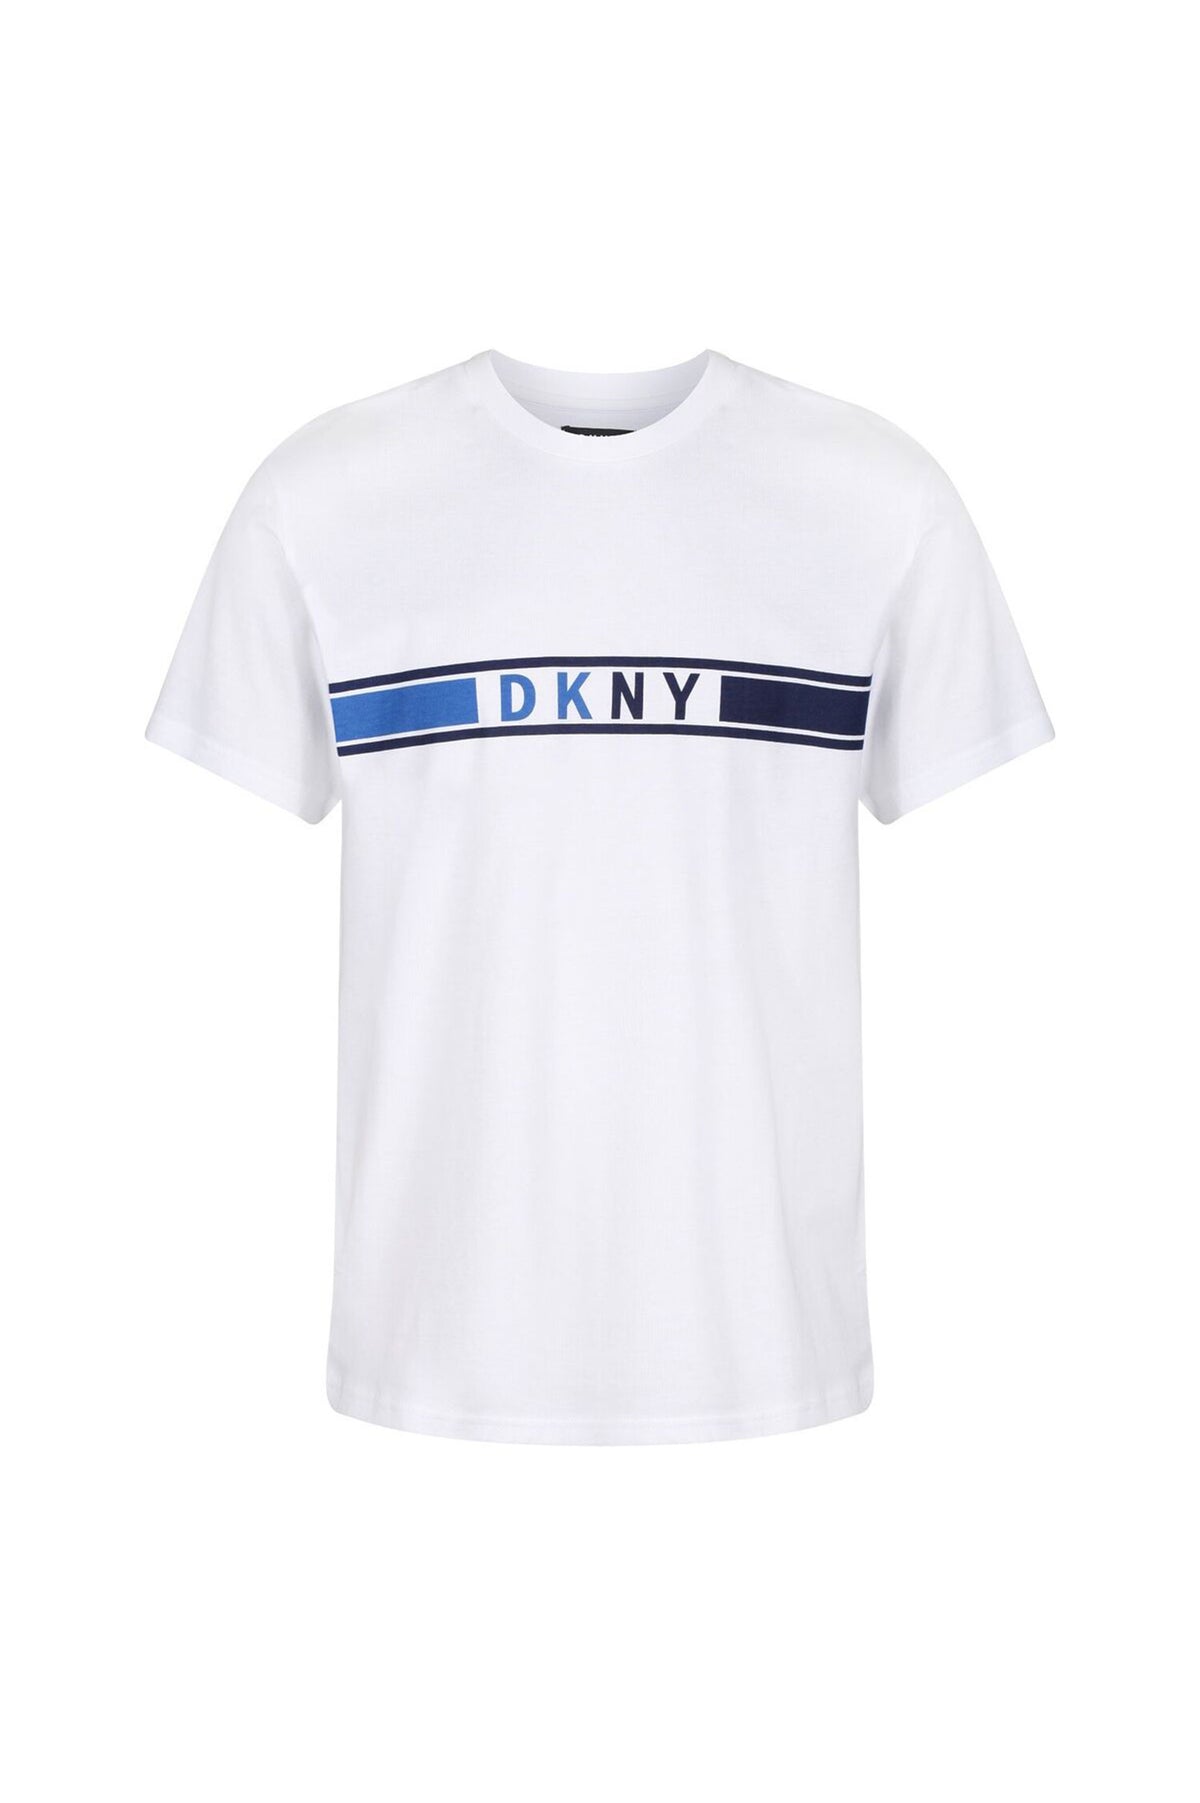 DKNY WHITE T-SHIRT